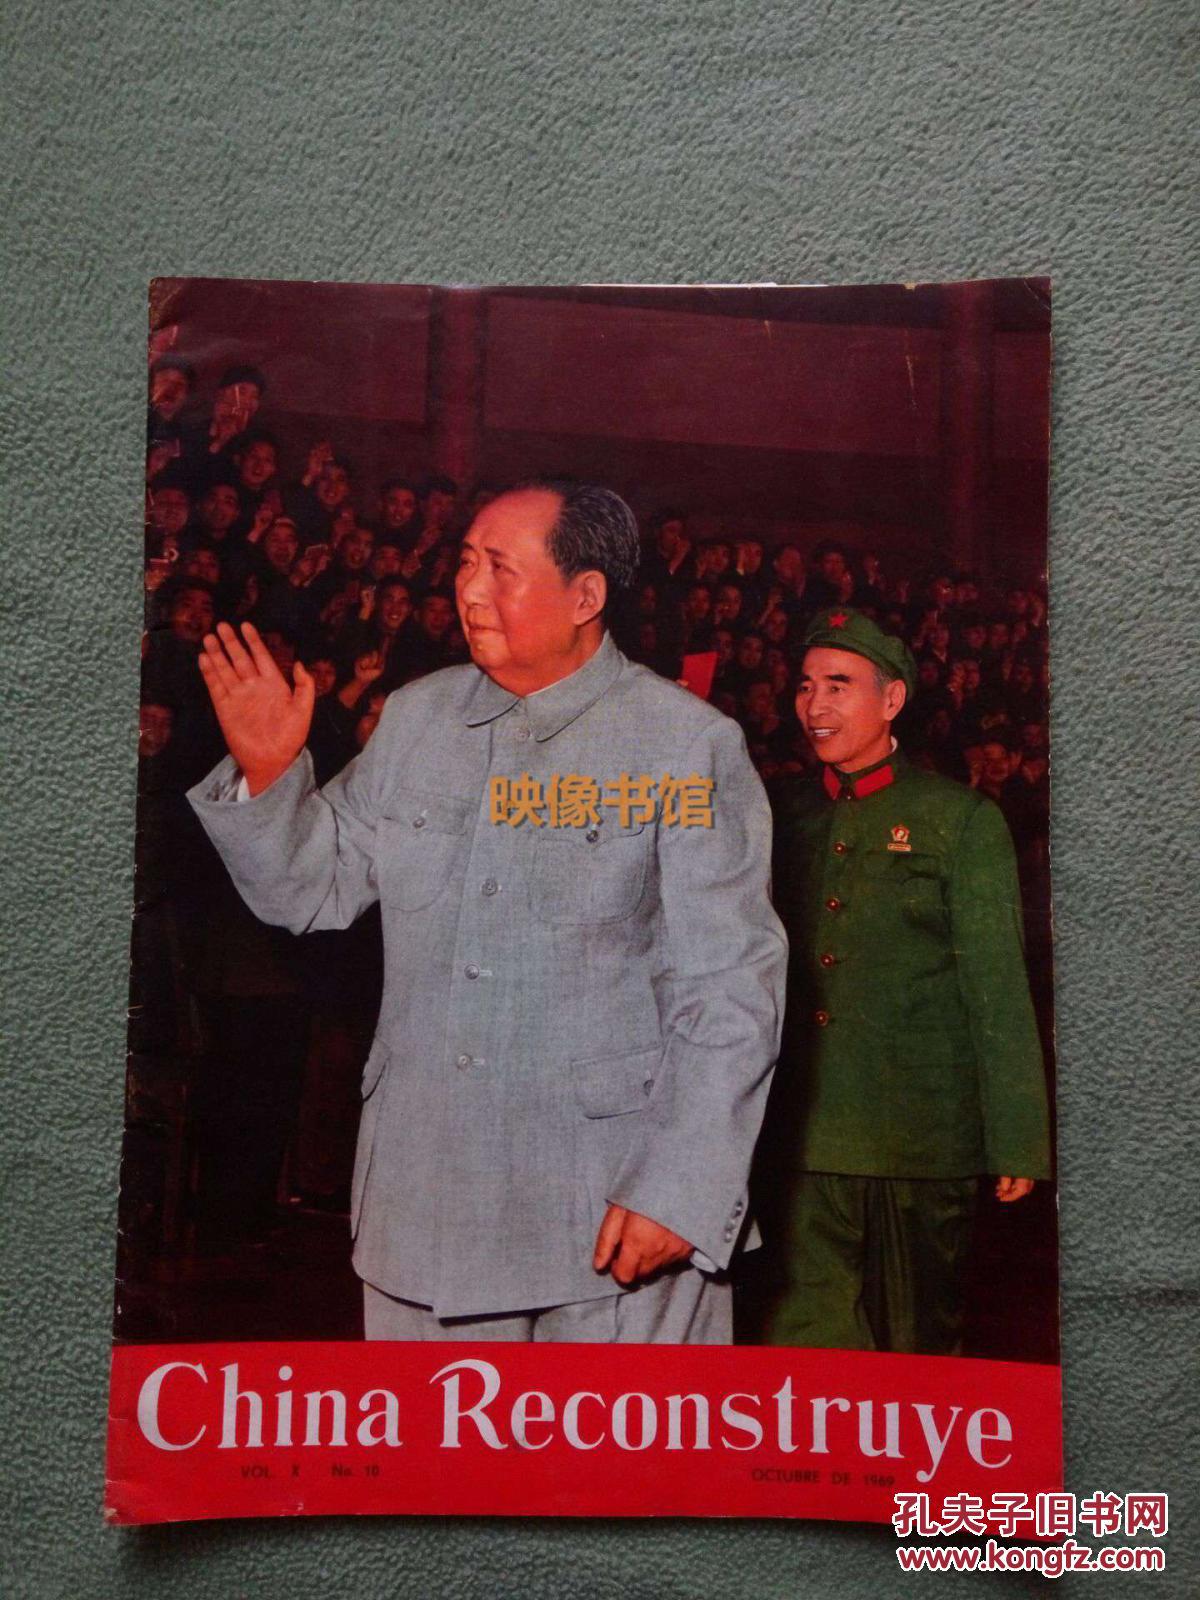 【图】中国建设1969年10月刊,西班牙版,珍贵历